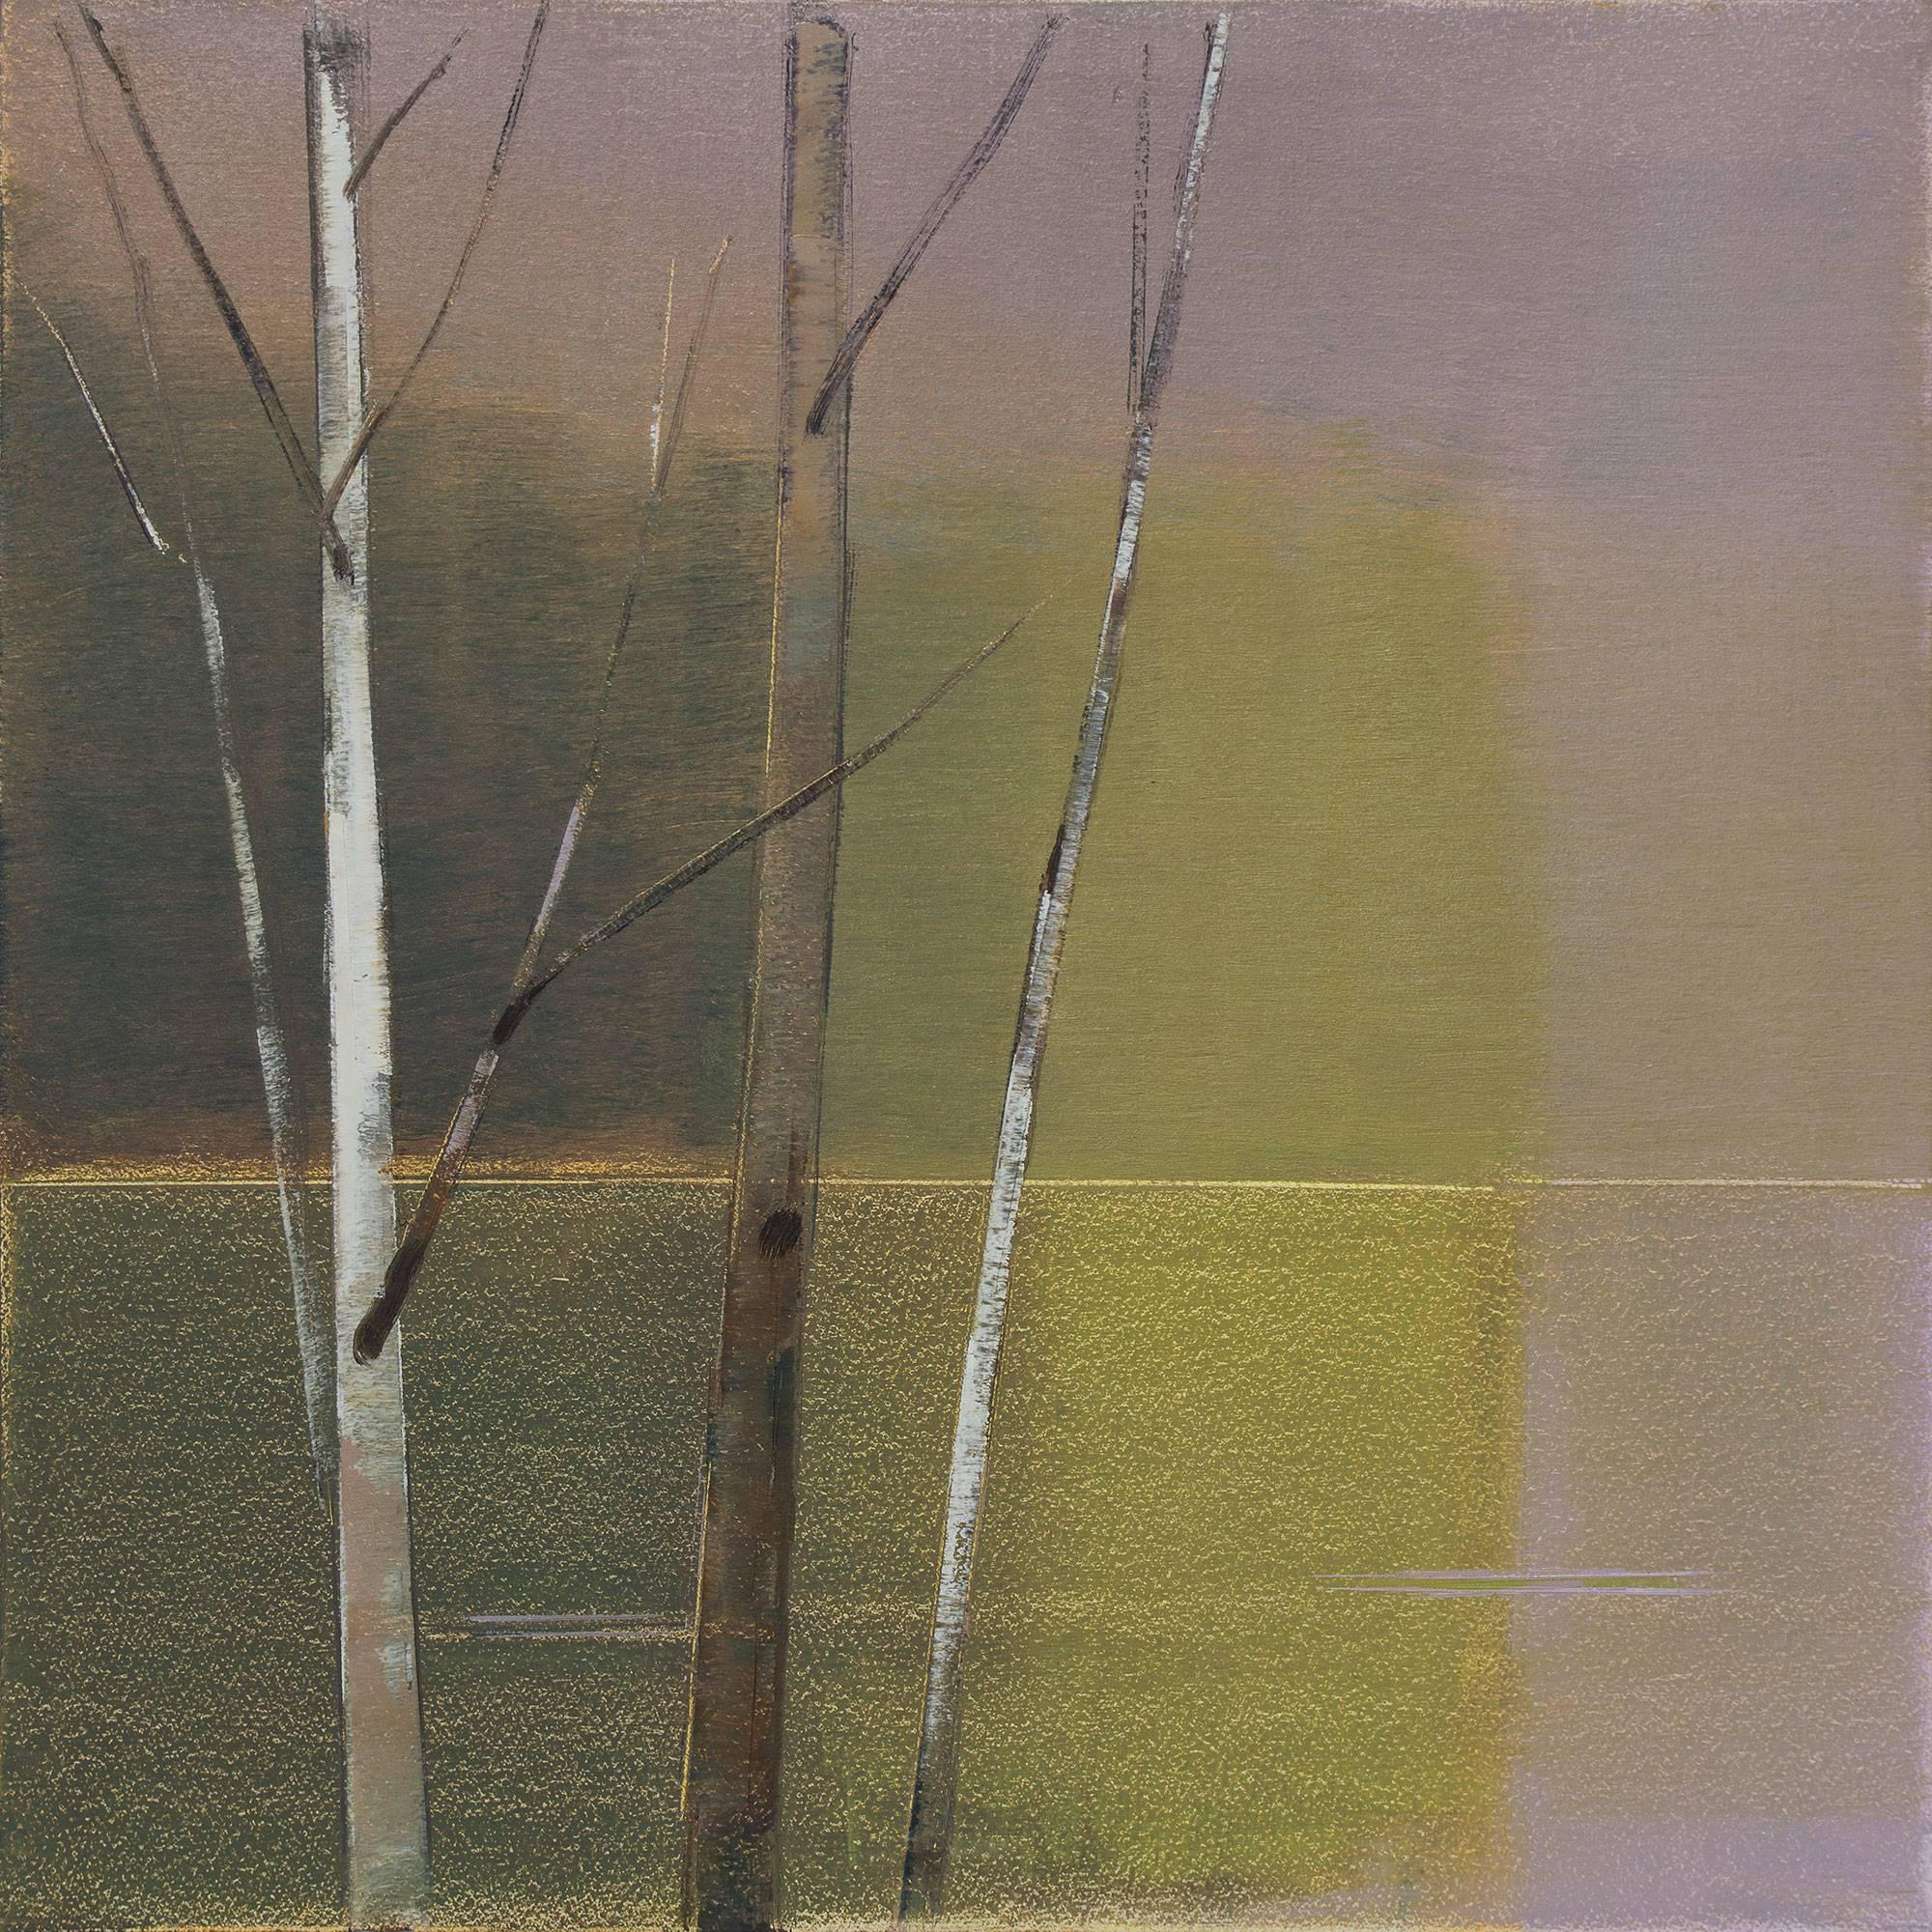 Stephen Pentak Landscape Painting - 2018, II.VI